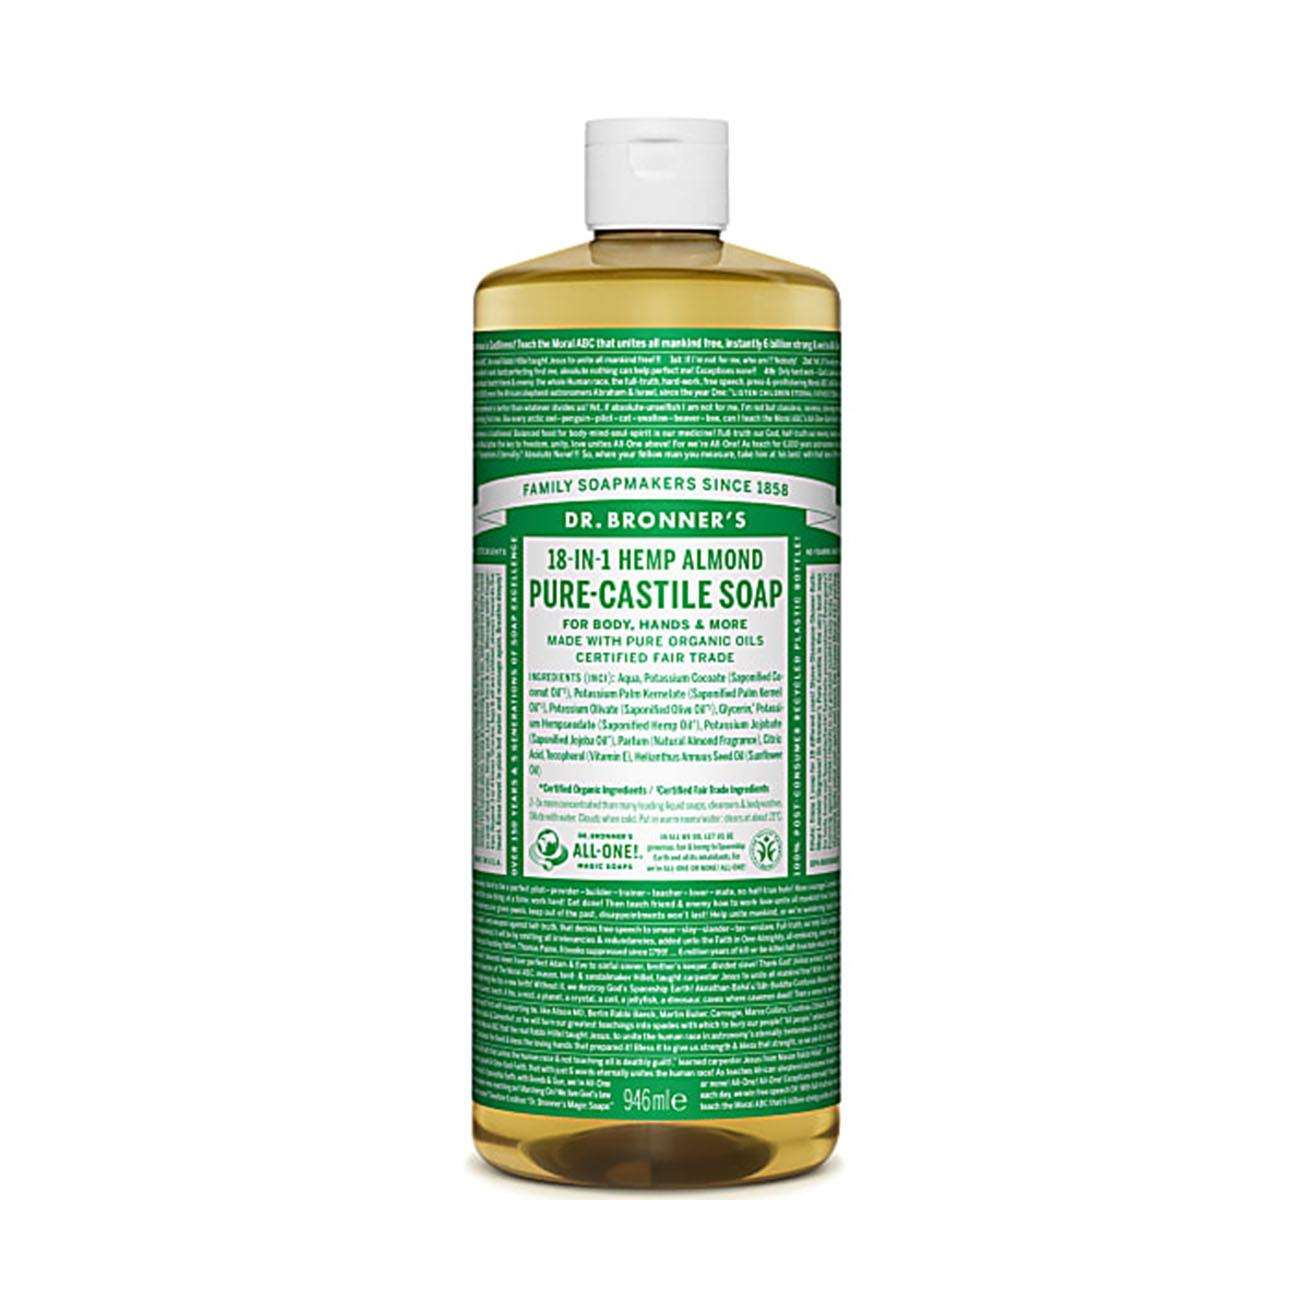 Almond Pure-Castile Liquid Soap 946ml